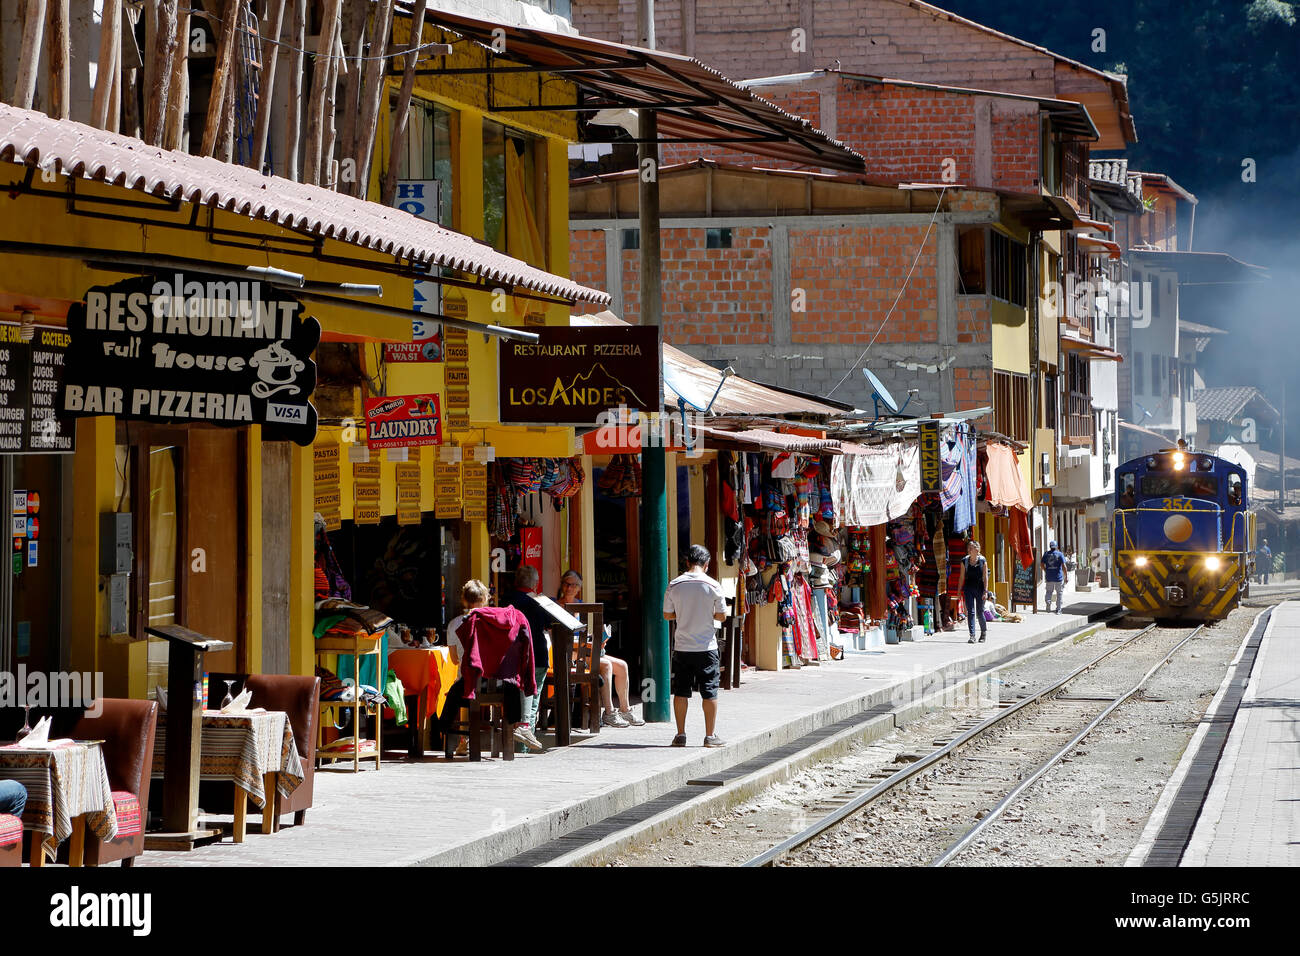 Trainieren Sie geht von Geschäften und Restaurants, Machu Picchu Pueblo (Fka Aguas Calientes), Cusco, Peru Stockfoto